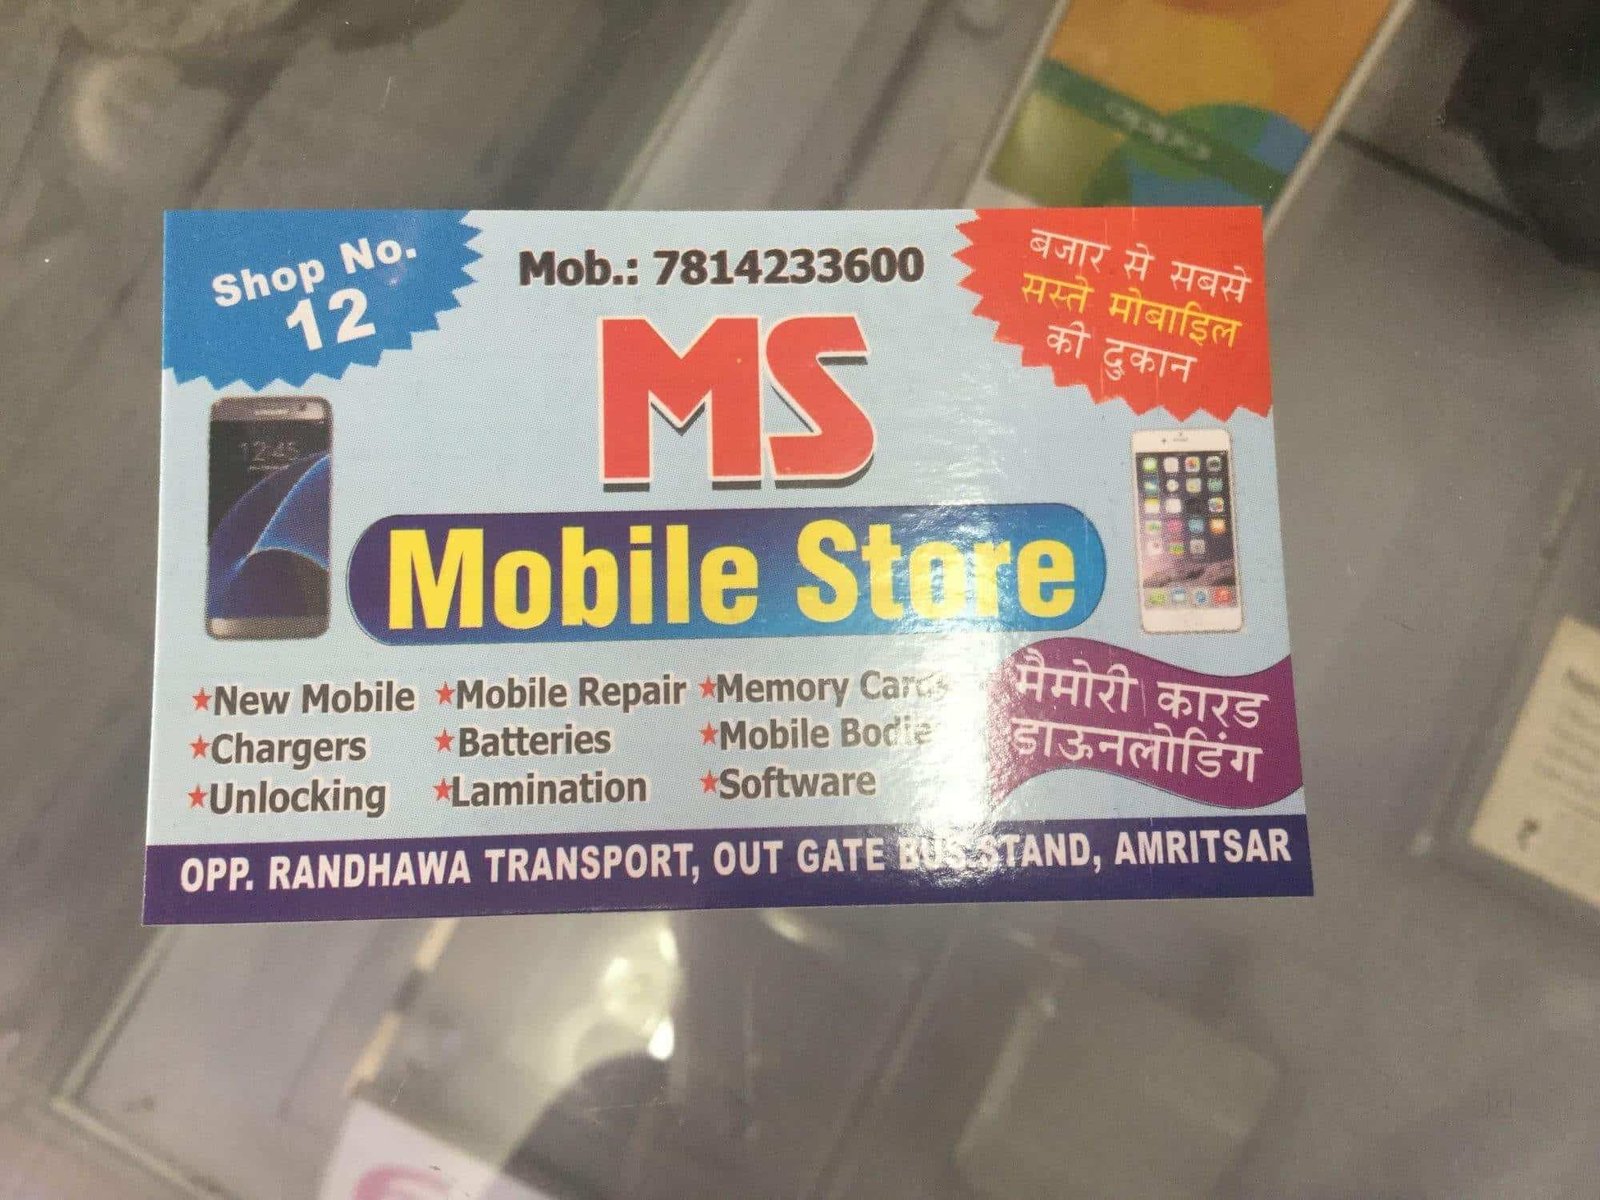 Ms Mobile Shop